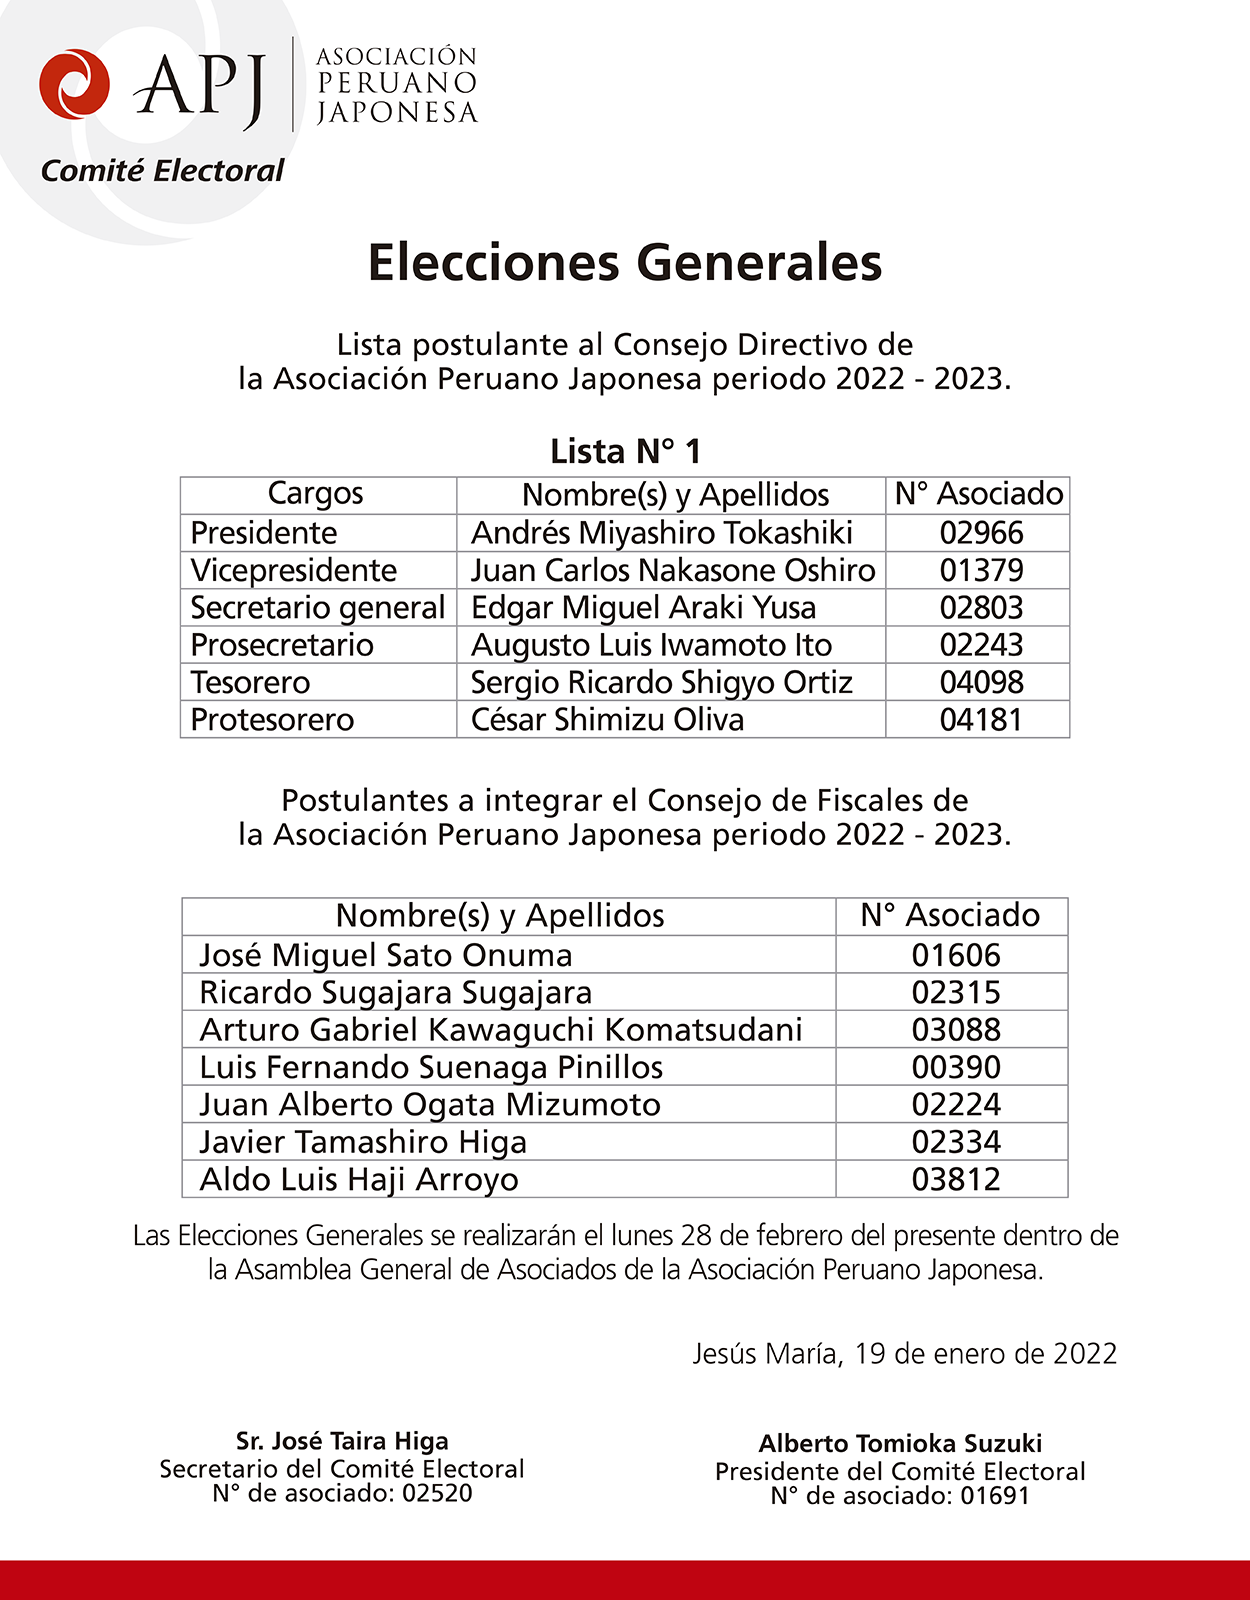 elecciones-generales-de-la-apj-periodo-2022-2023